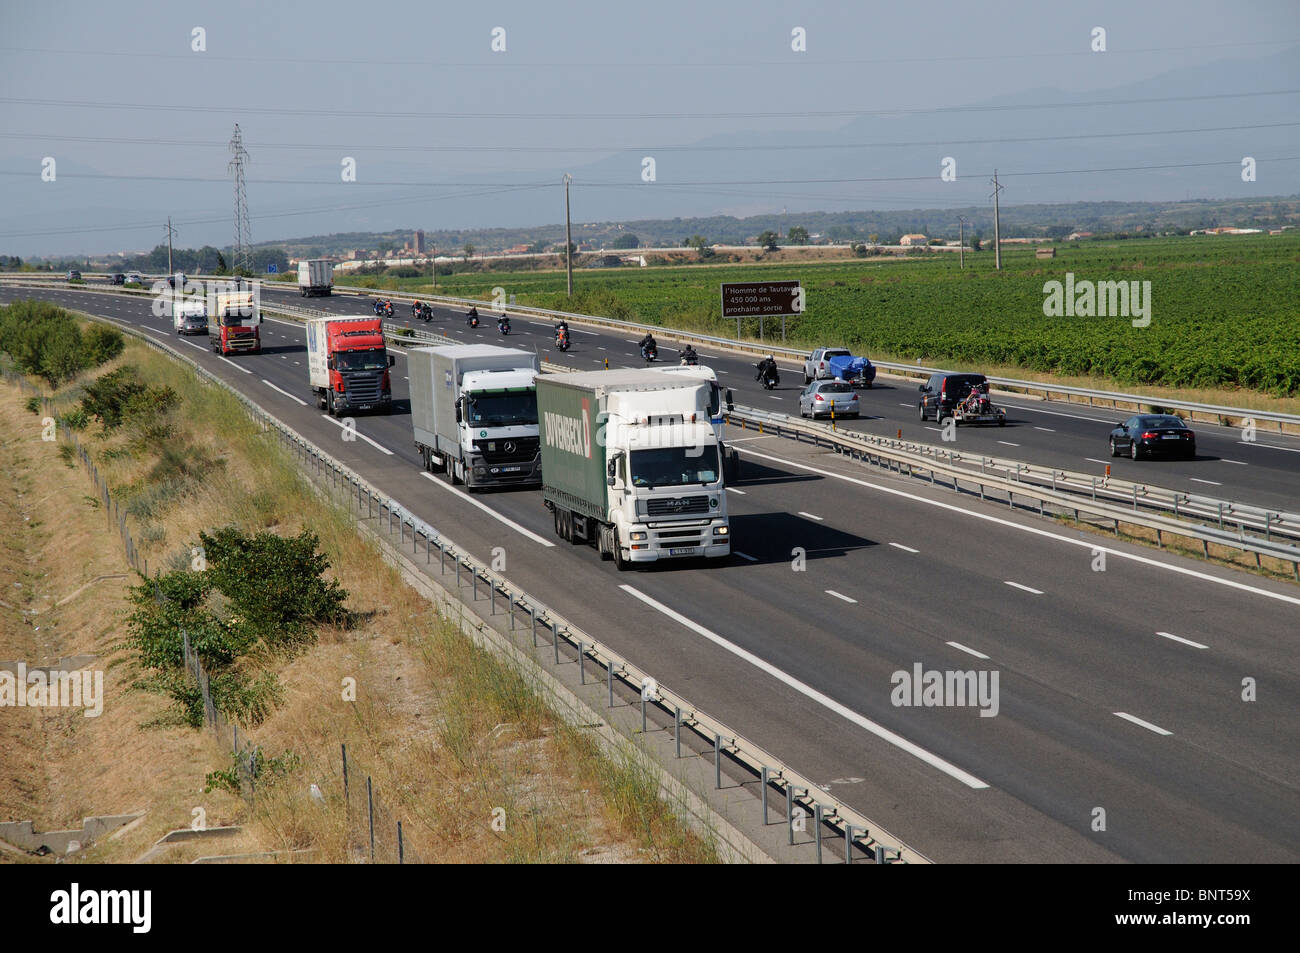 Autoroute A9 chaussées vu au nord de Perpignan sud de la France à l'aide de camions route autoroute française Banque D'Images